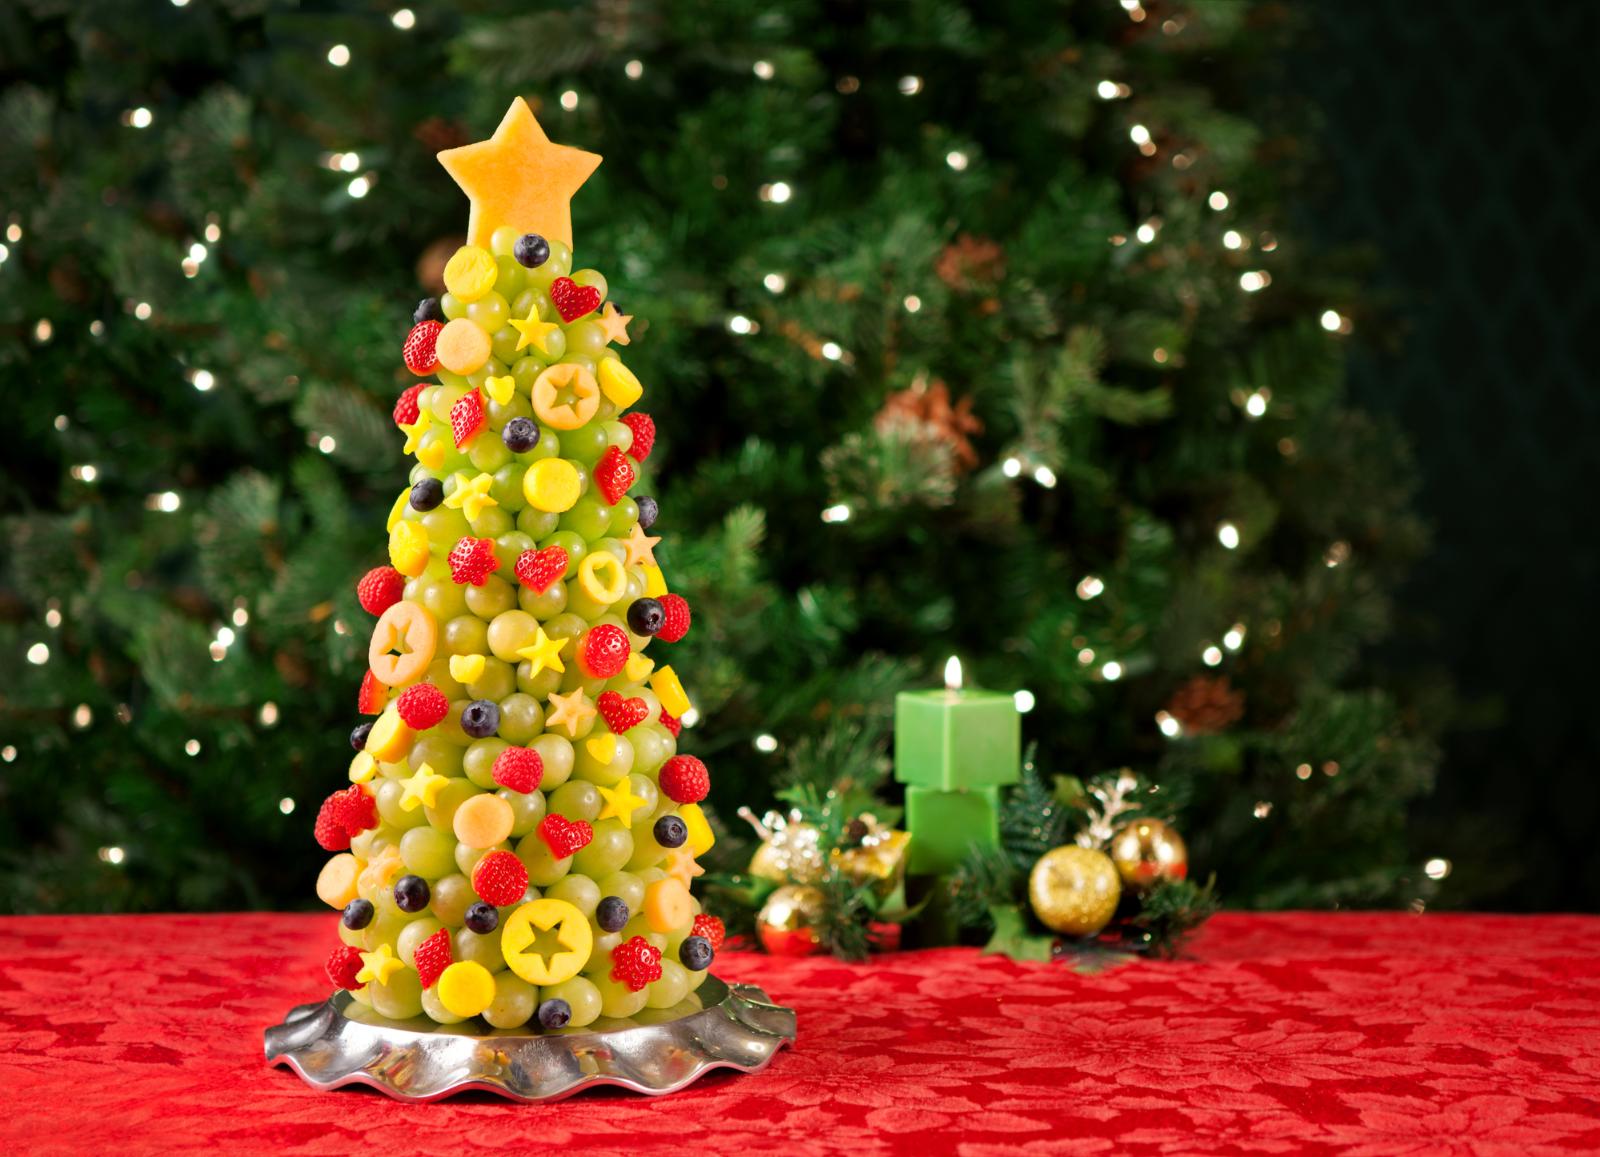 Как подать фрукты к новогоднему столу? В виде елки, конечно! Лайфхак от Раисы Алибековой: Украсить елочку можно веточками мяты. Такую фруктовую тарелку расхватают не только дети, но и взрослые, ведь она смотрится очень оригинально.